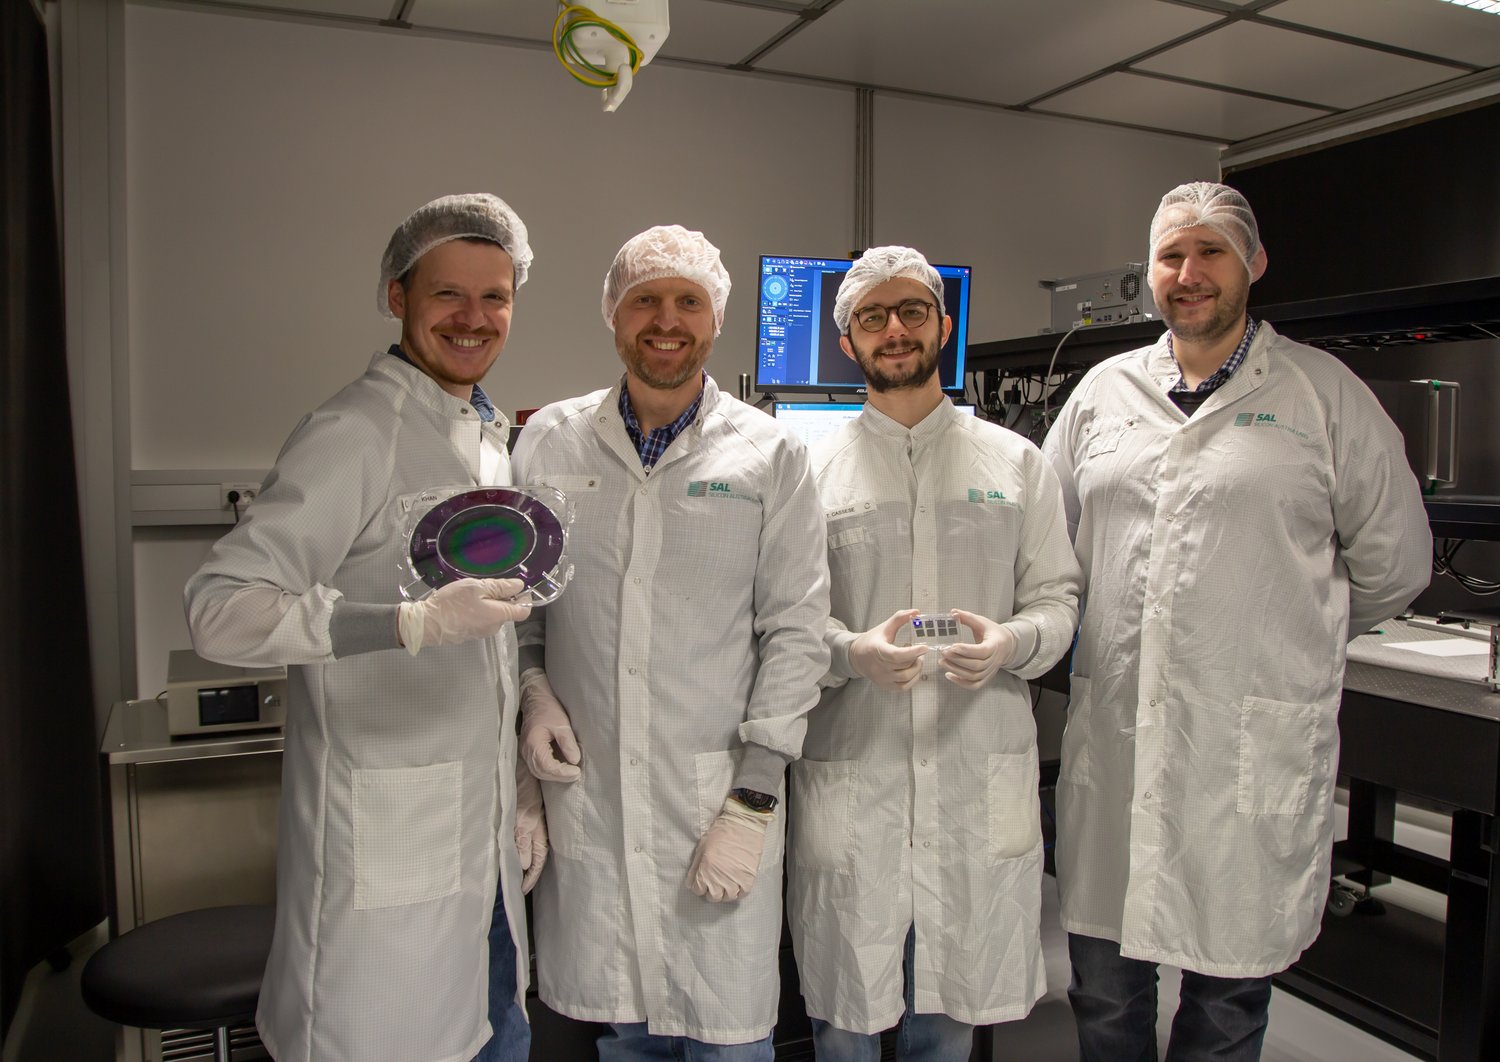 Gruppe von Forschern in weißen Mänteln im Labor